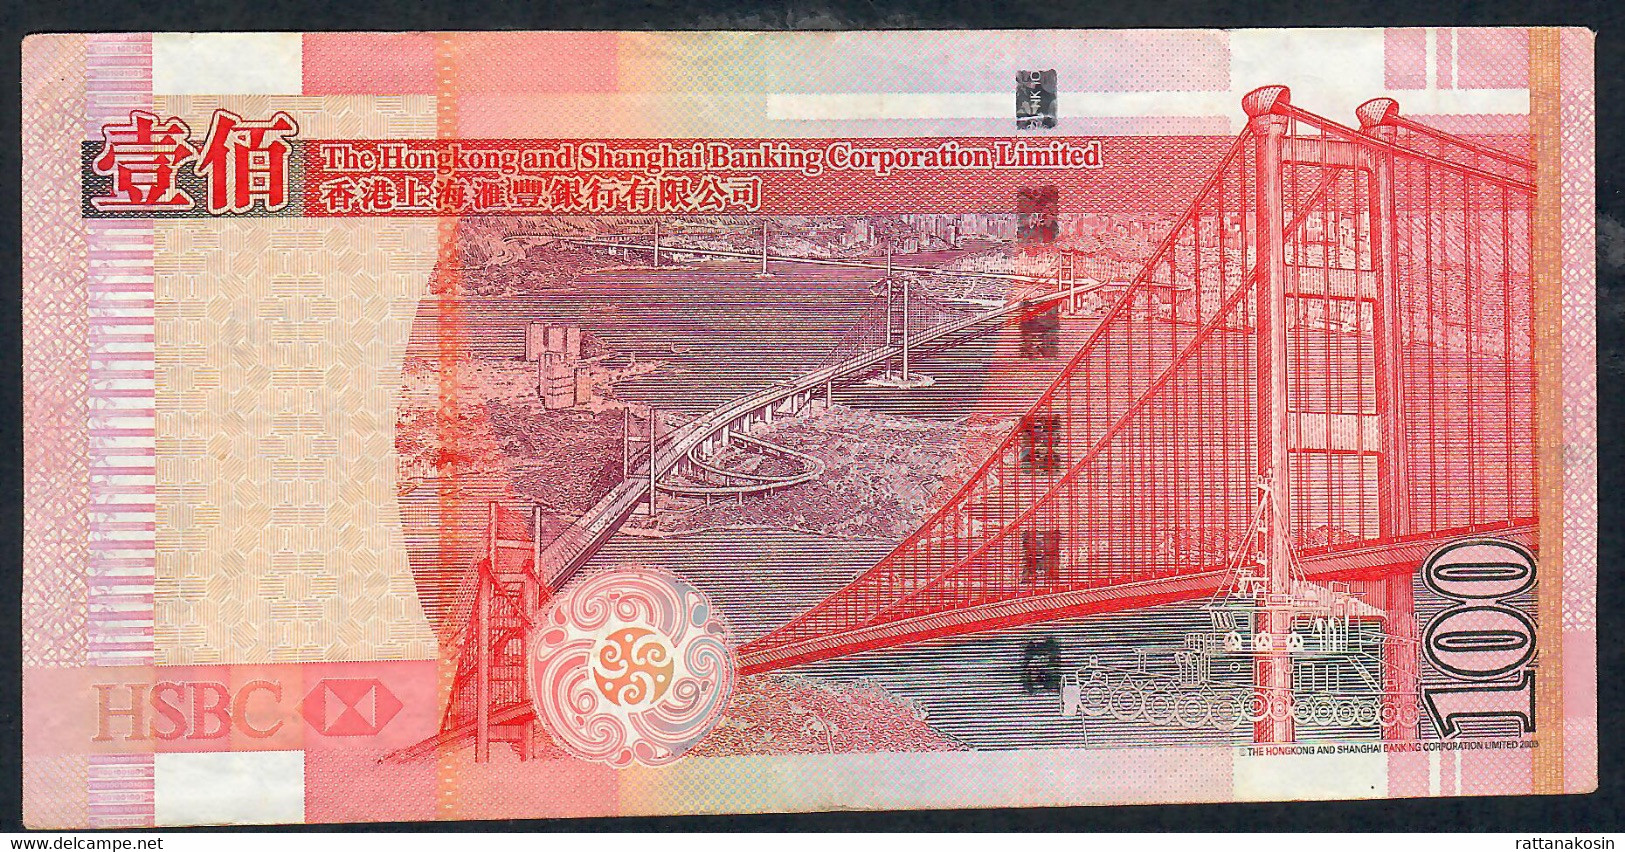 HONG-KONG P209f 100  DOLLARS 1.1.2009  #UN  HSBC VF NO P.h. - Hongkong